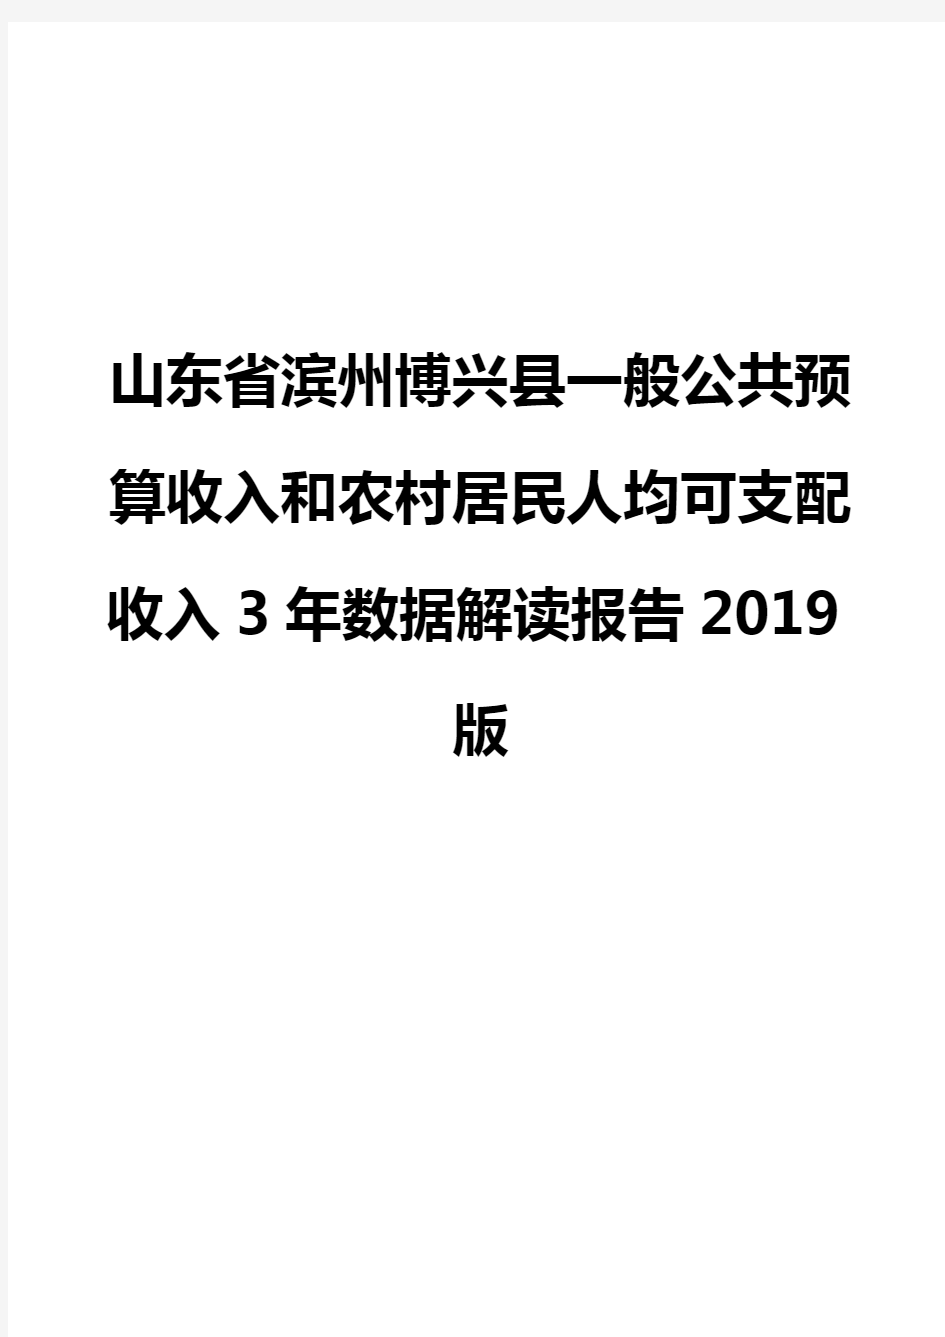 山东省滨州博兴县一般公共预算收入和农村居民人均可支配收入3年数据解读报告2019版